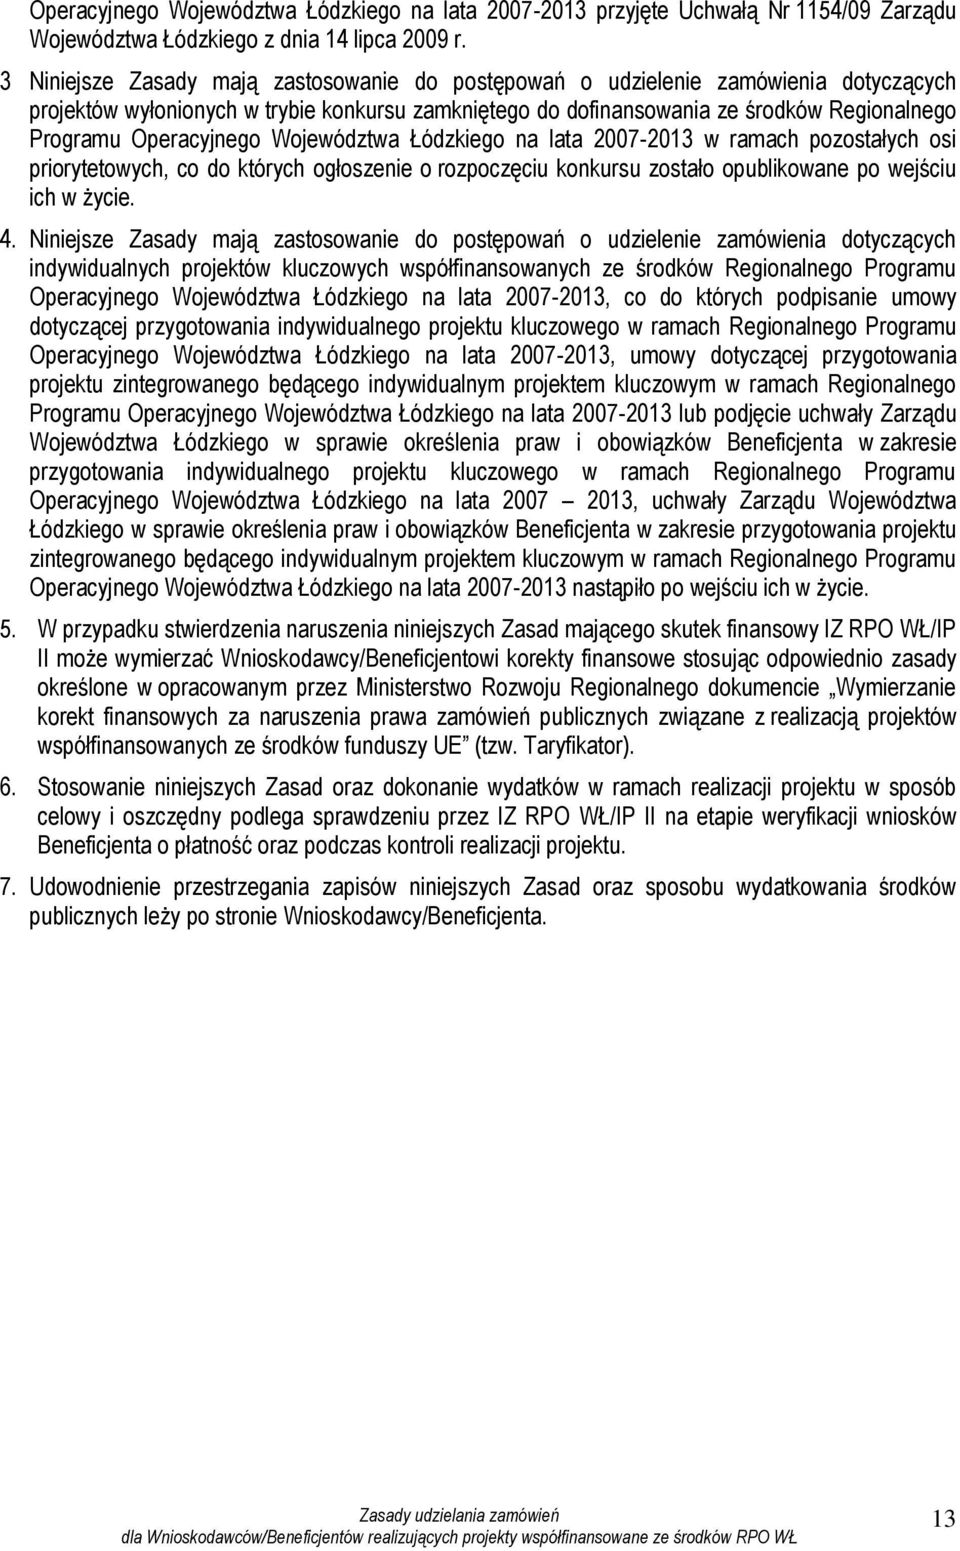 Operacyjnego Województwa Łódzkiego na lata 2007-2013 w ramach pozostałych osi priorytetowych, co do których ogłoszenie o rozpoczęciu konkursu zostało opublikowane po wejściu ich w życie. 4.